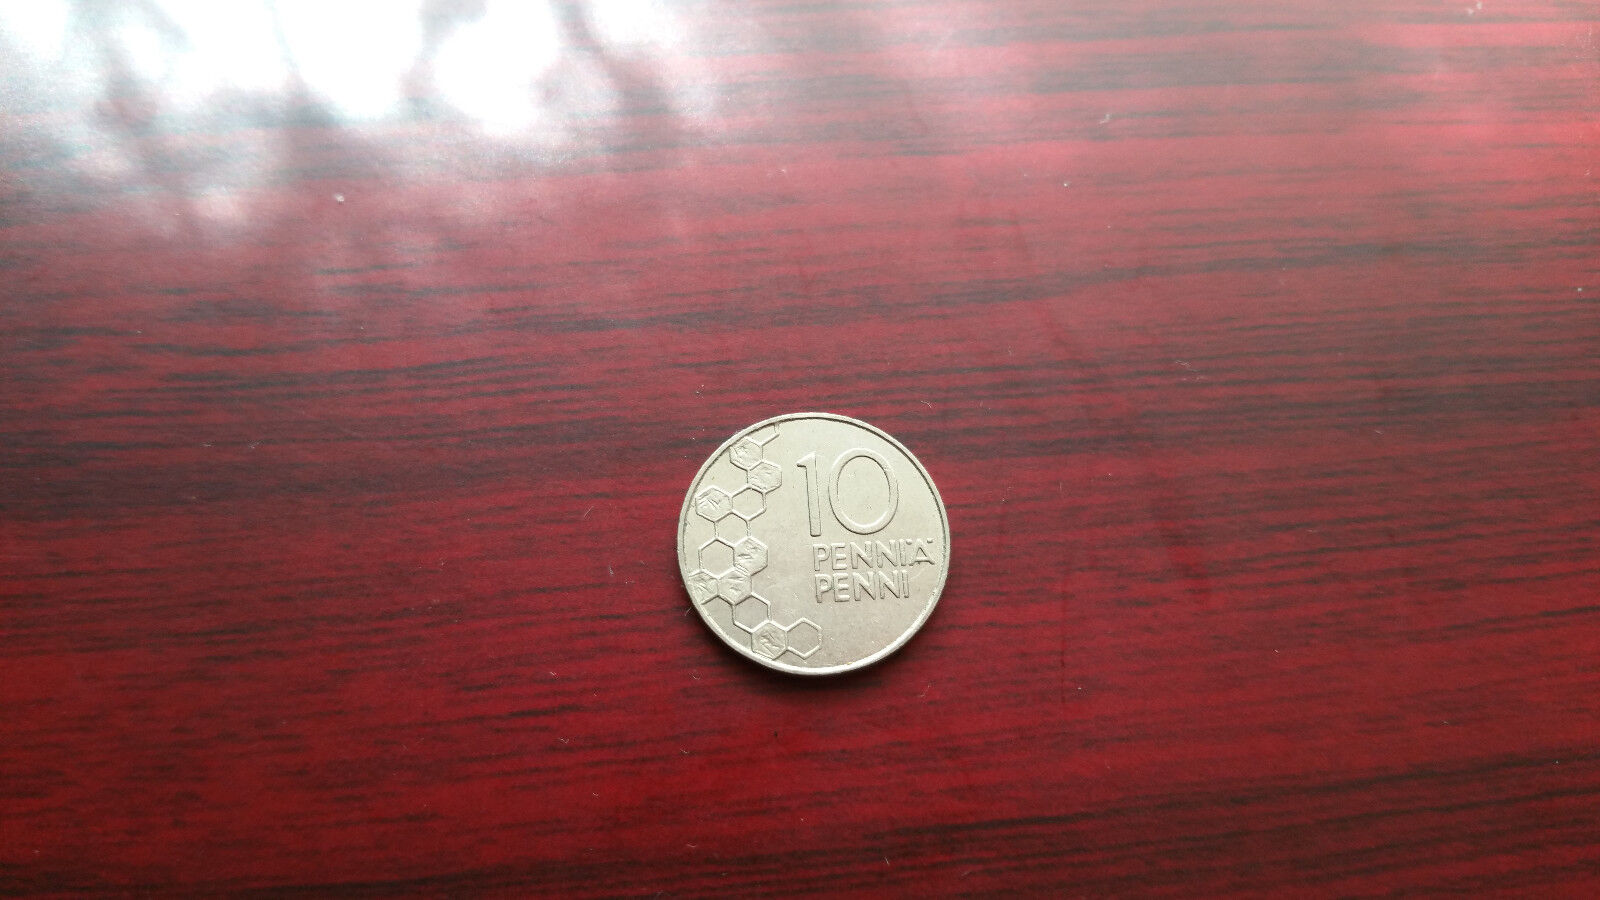 1990 and 1996 Suomi Finland 10 penni Без бренда - фотография #2